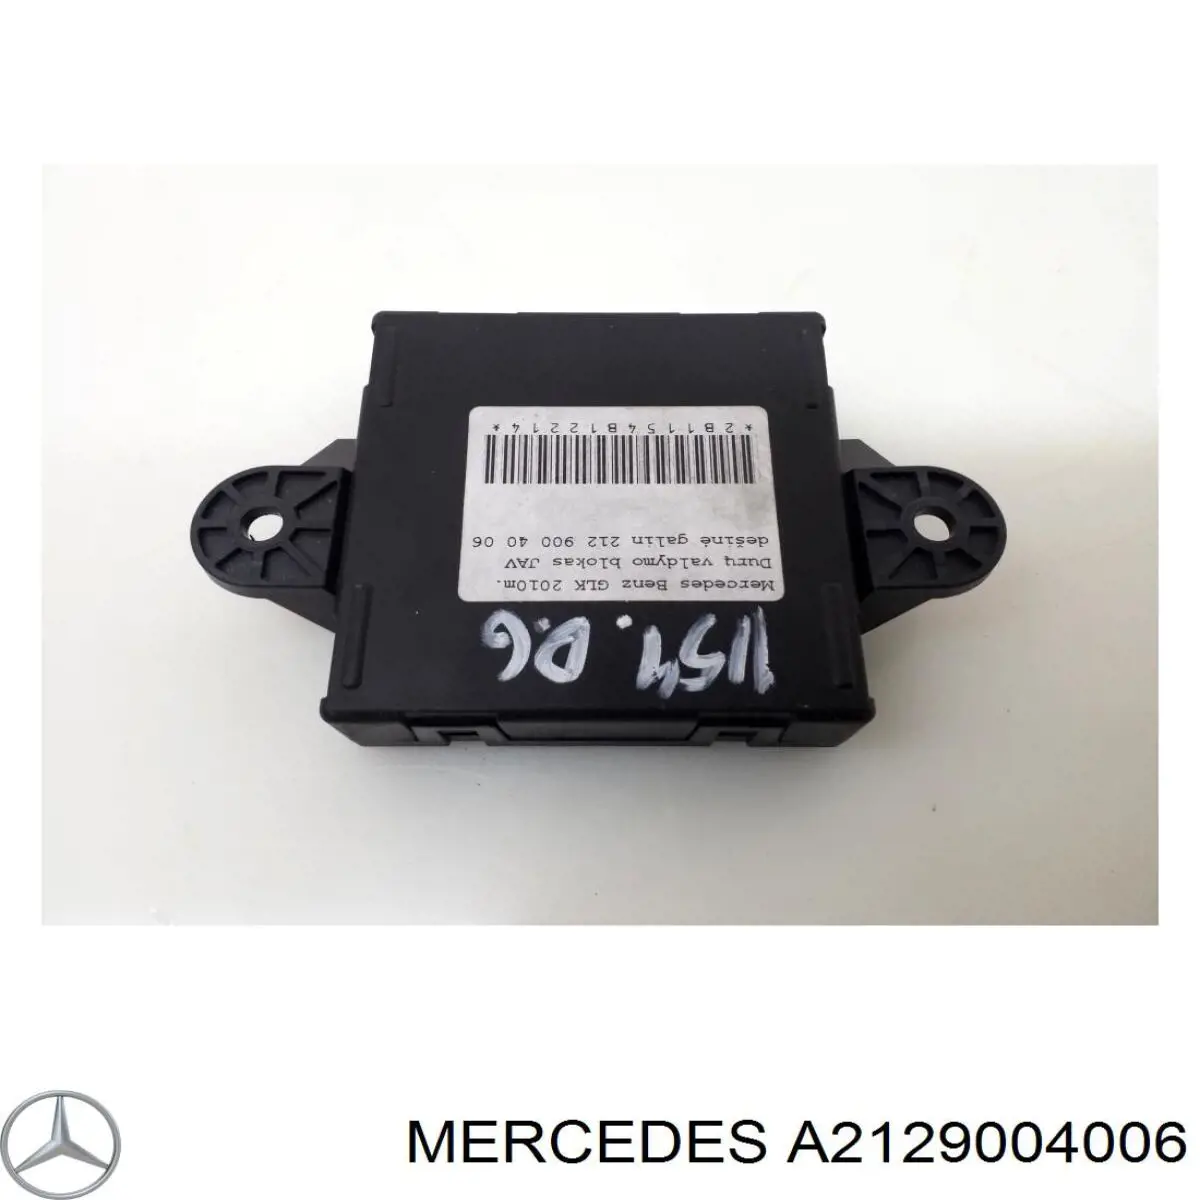 A2129004006 Mercedes bloque confort